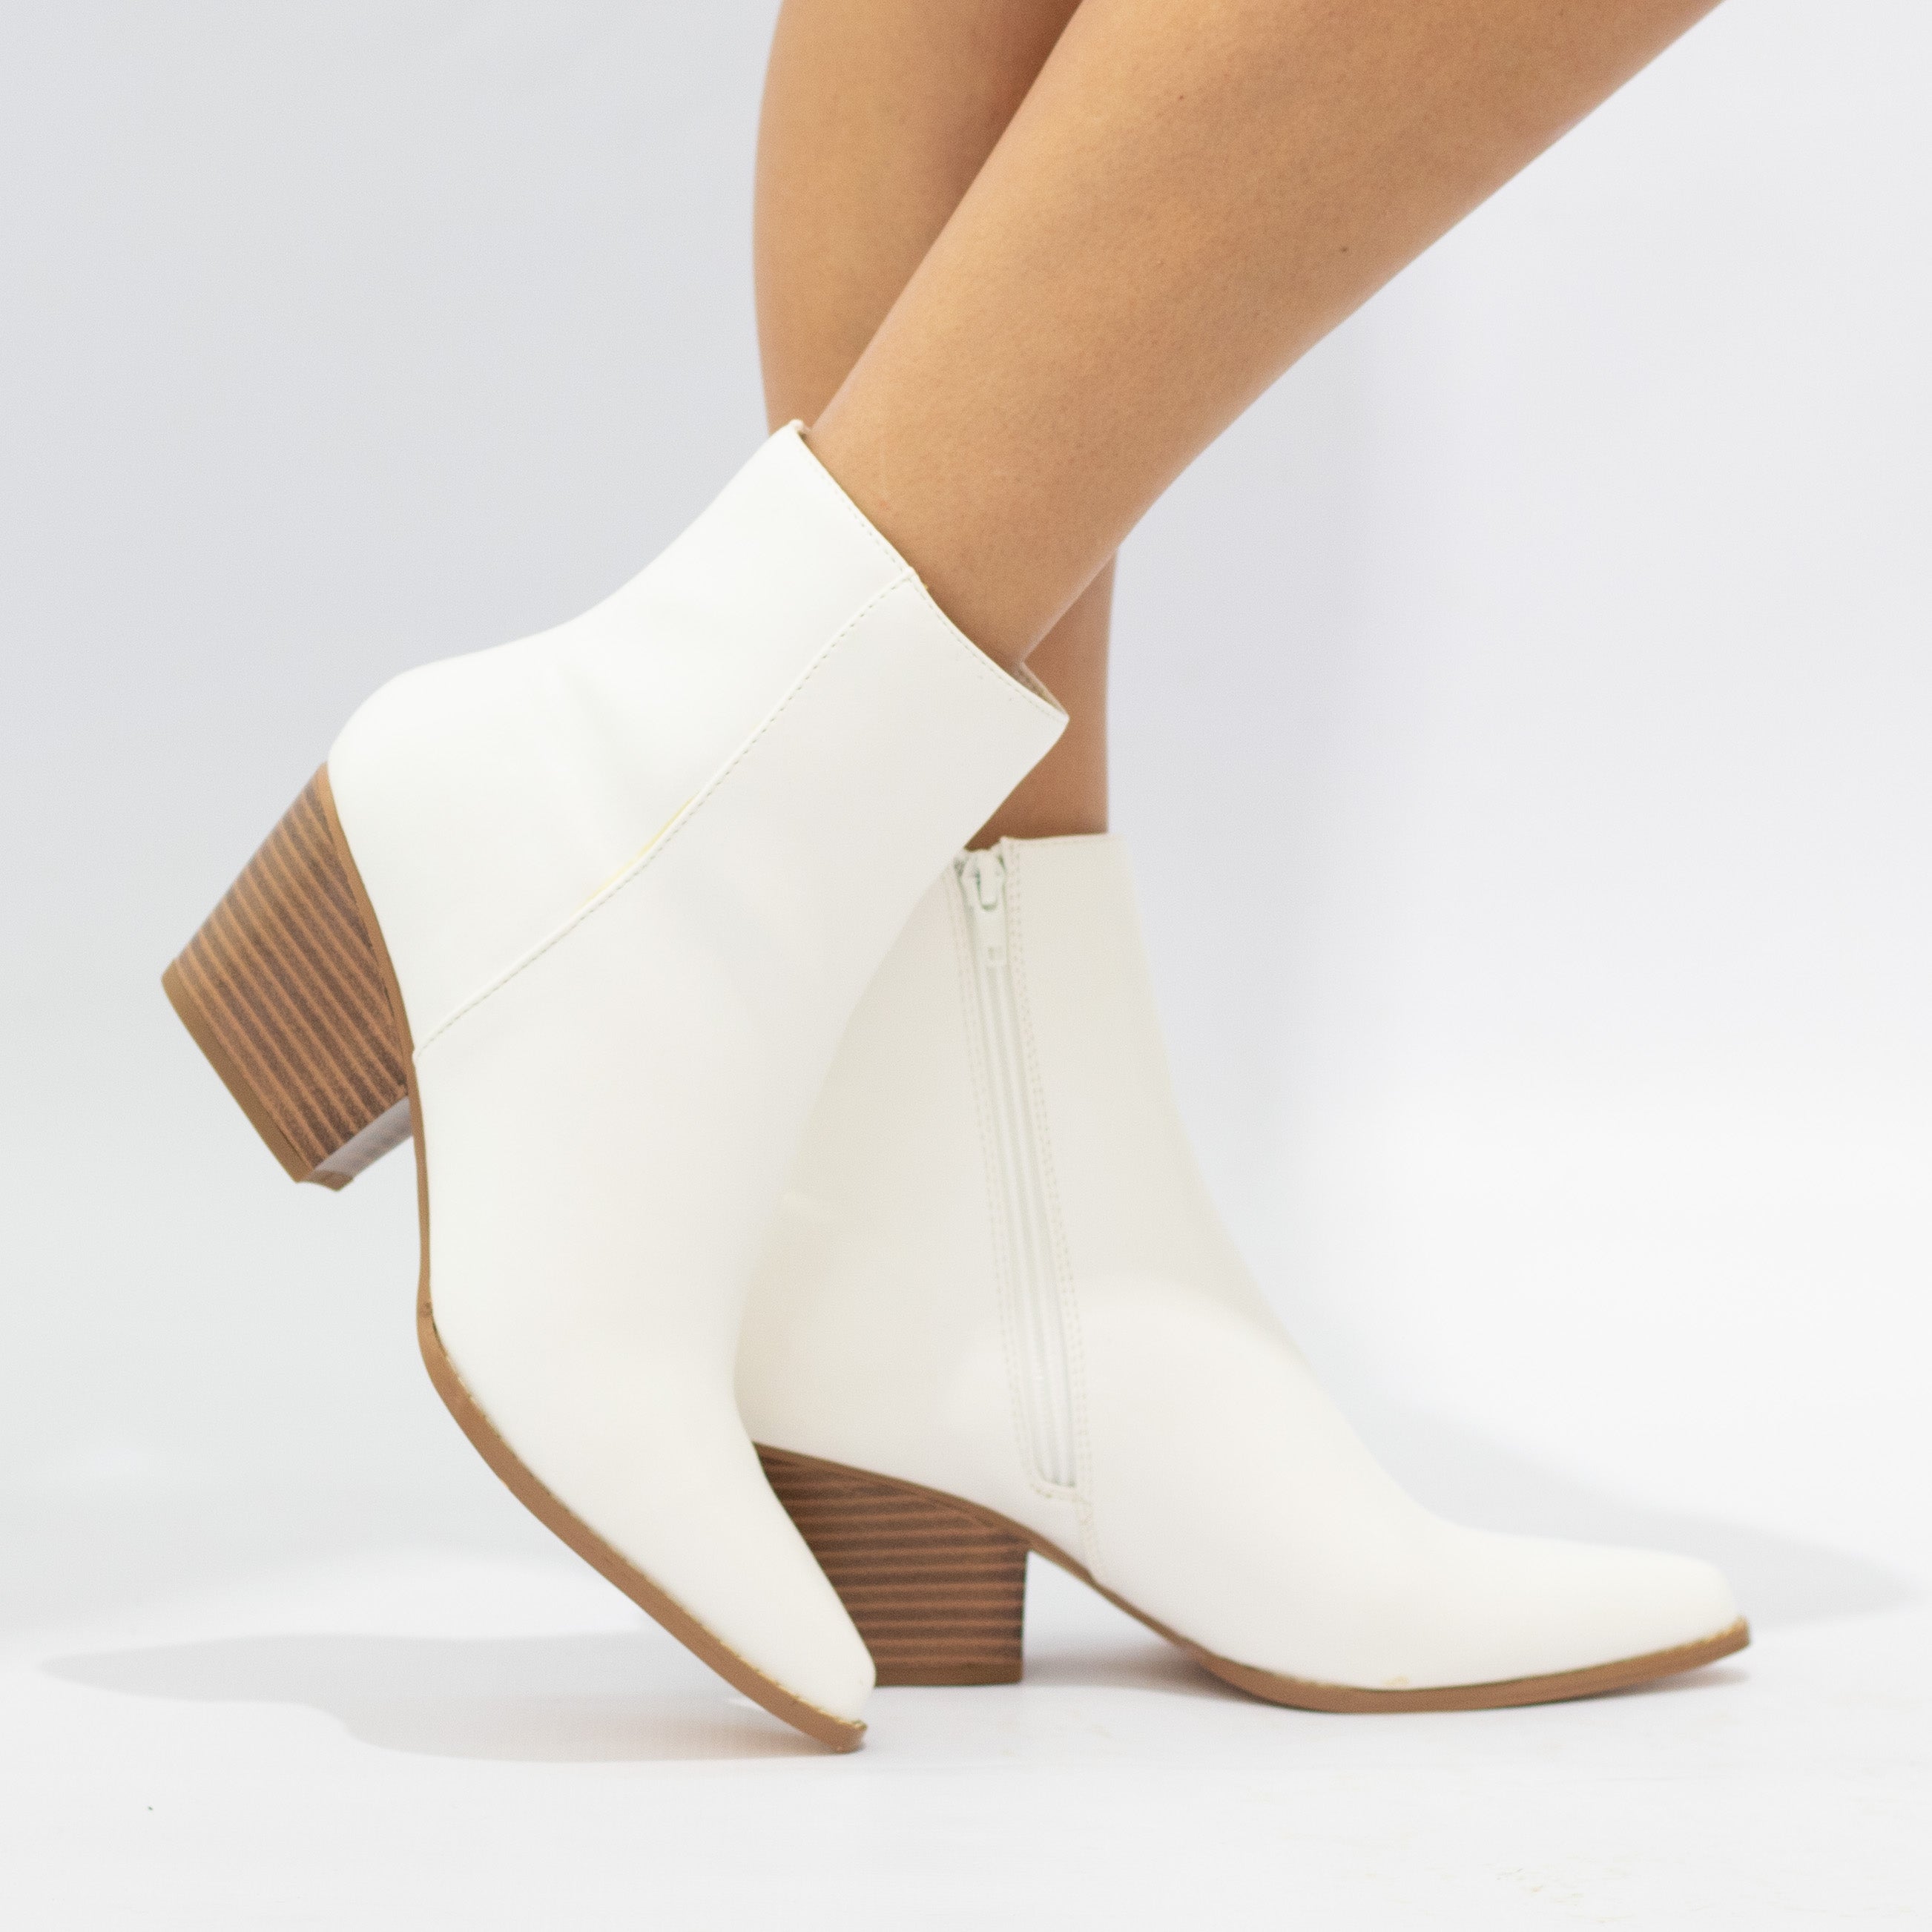 White 6cm block heel LA08-18 PU ankle boot noelle